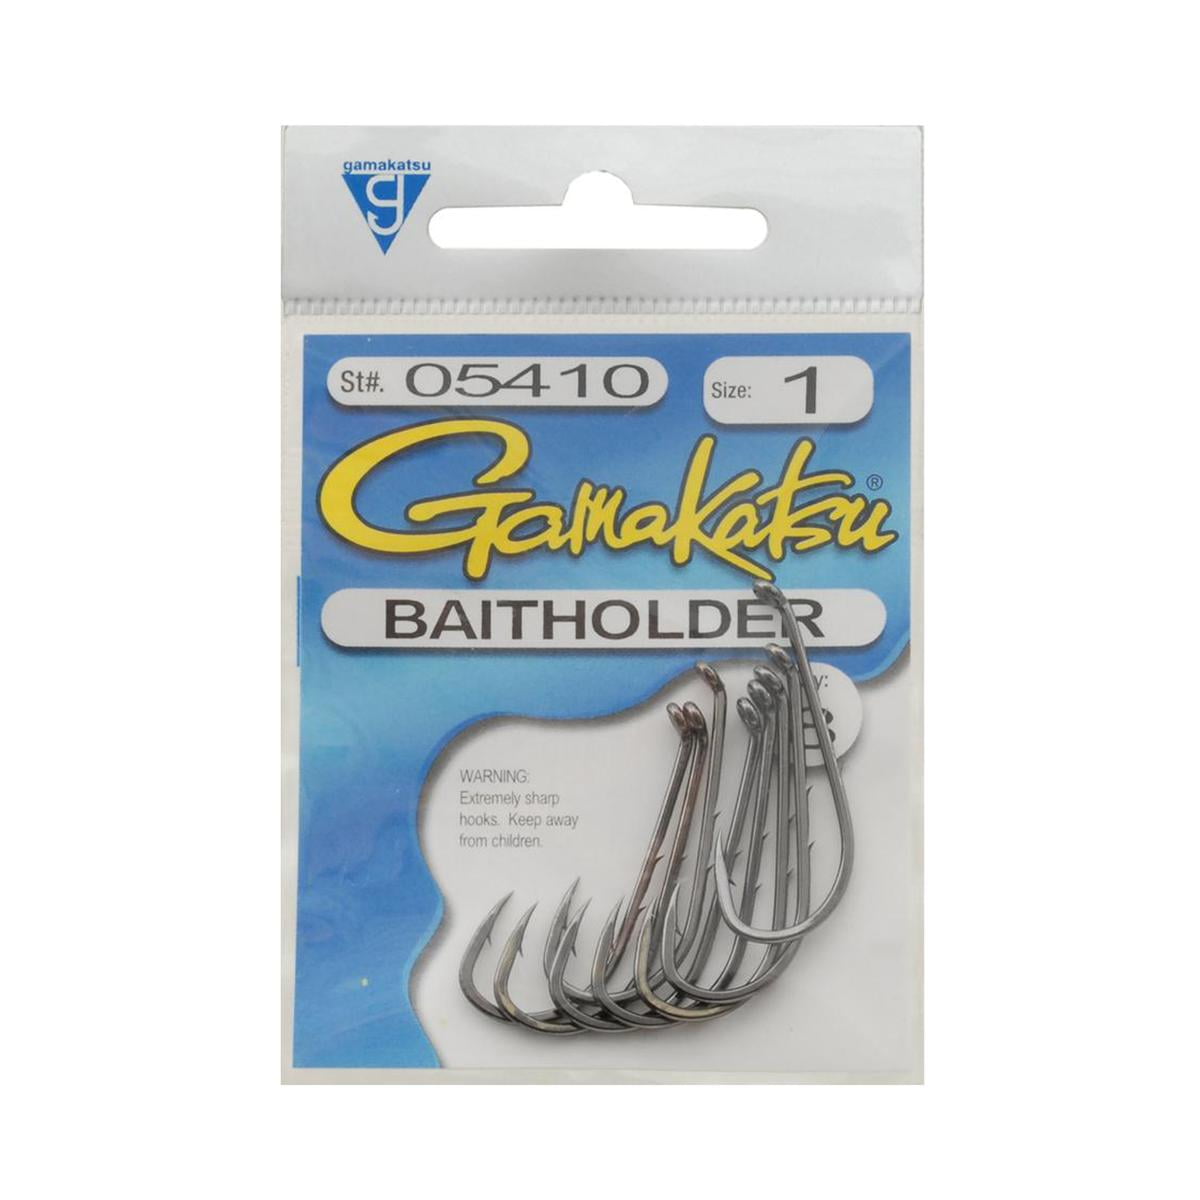 Gamakatsu Baitholder Hooks, Size 5/0, 5 Pack 